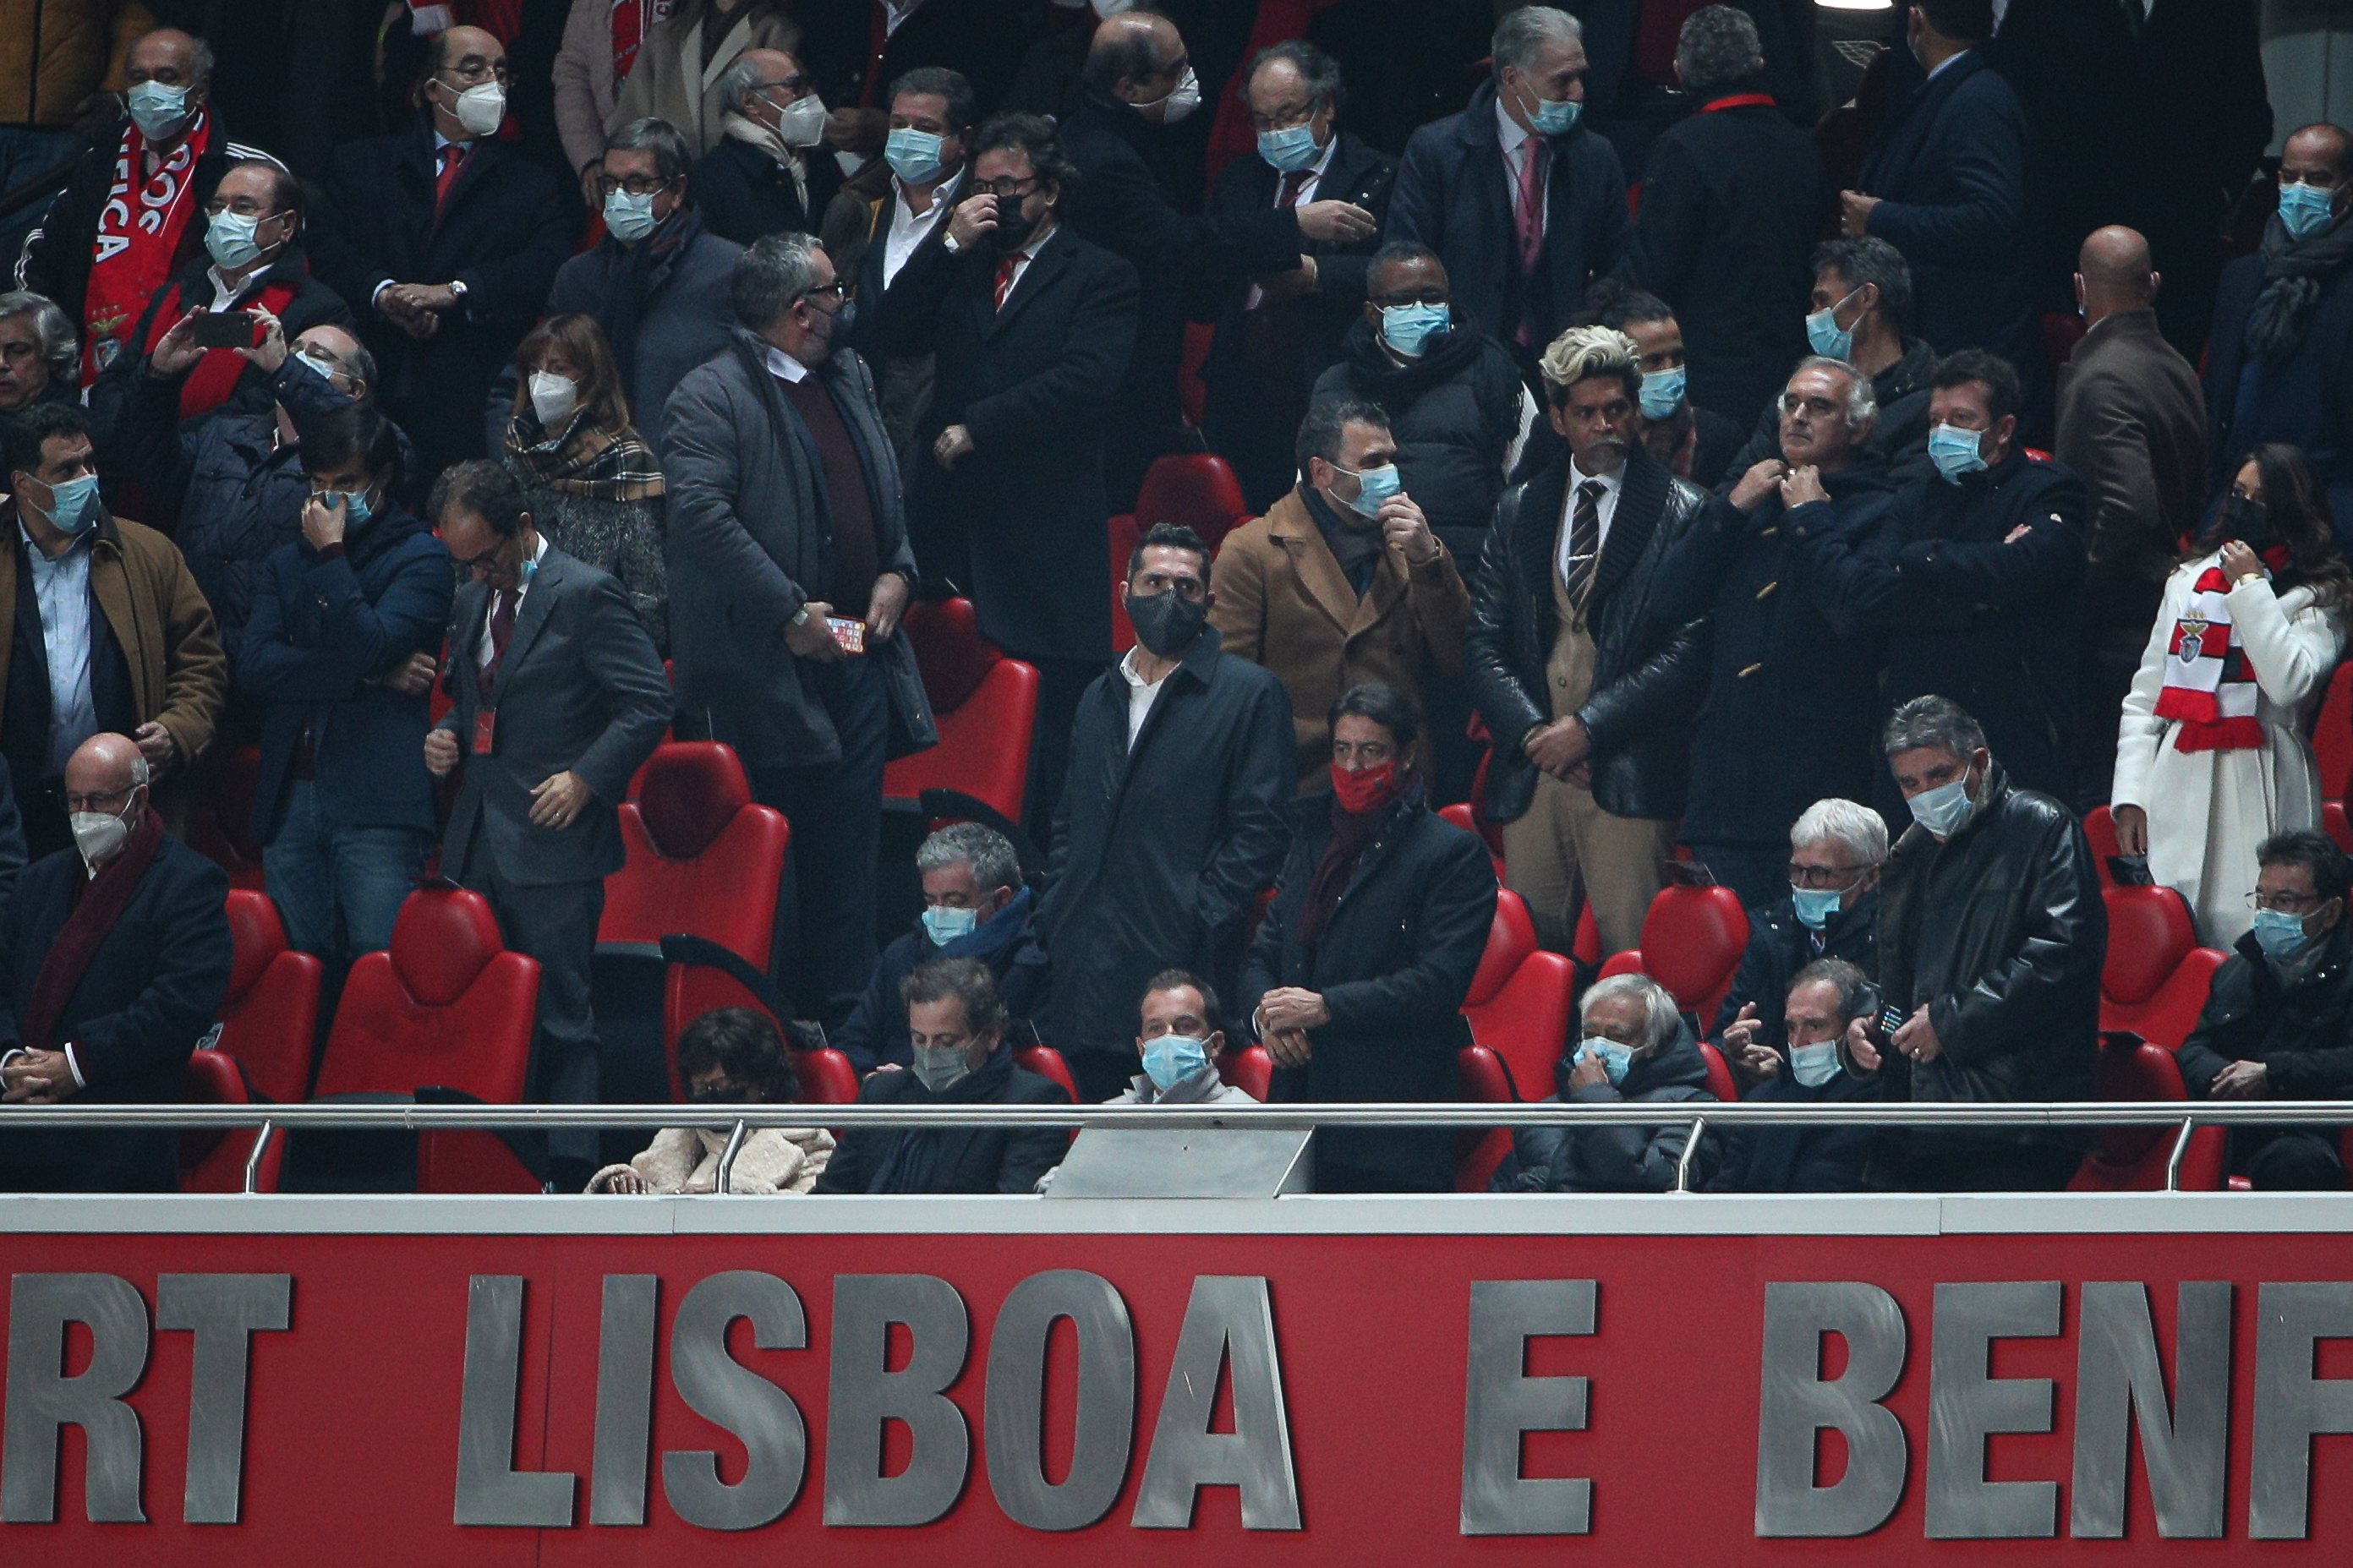 Frederico Varandas e Rui Costa durante o jogo entre o Sport Lisboa e Benfica e o Sporting Clube de Portugal no estádio da Luz, a contar para a 13ª jornada da Primeira Liga 2021/22. Lisboa, 03 de Dezembro de 2021. FILIPE AMORIM/OBSERVADOR